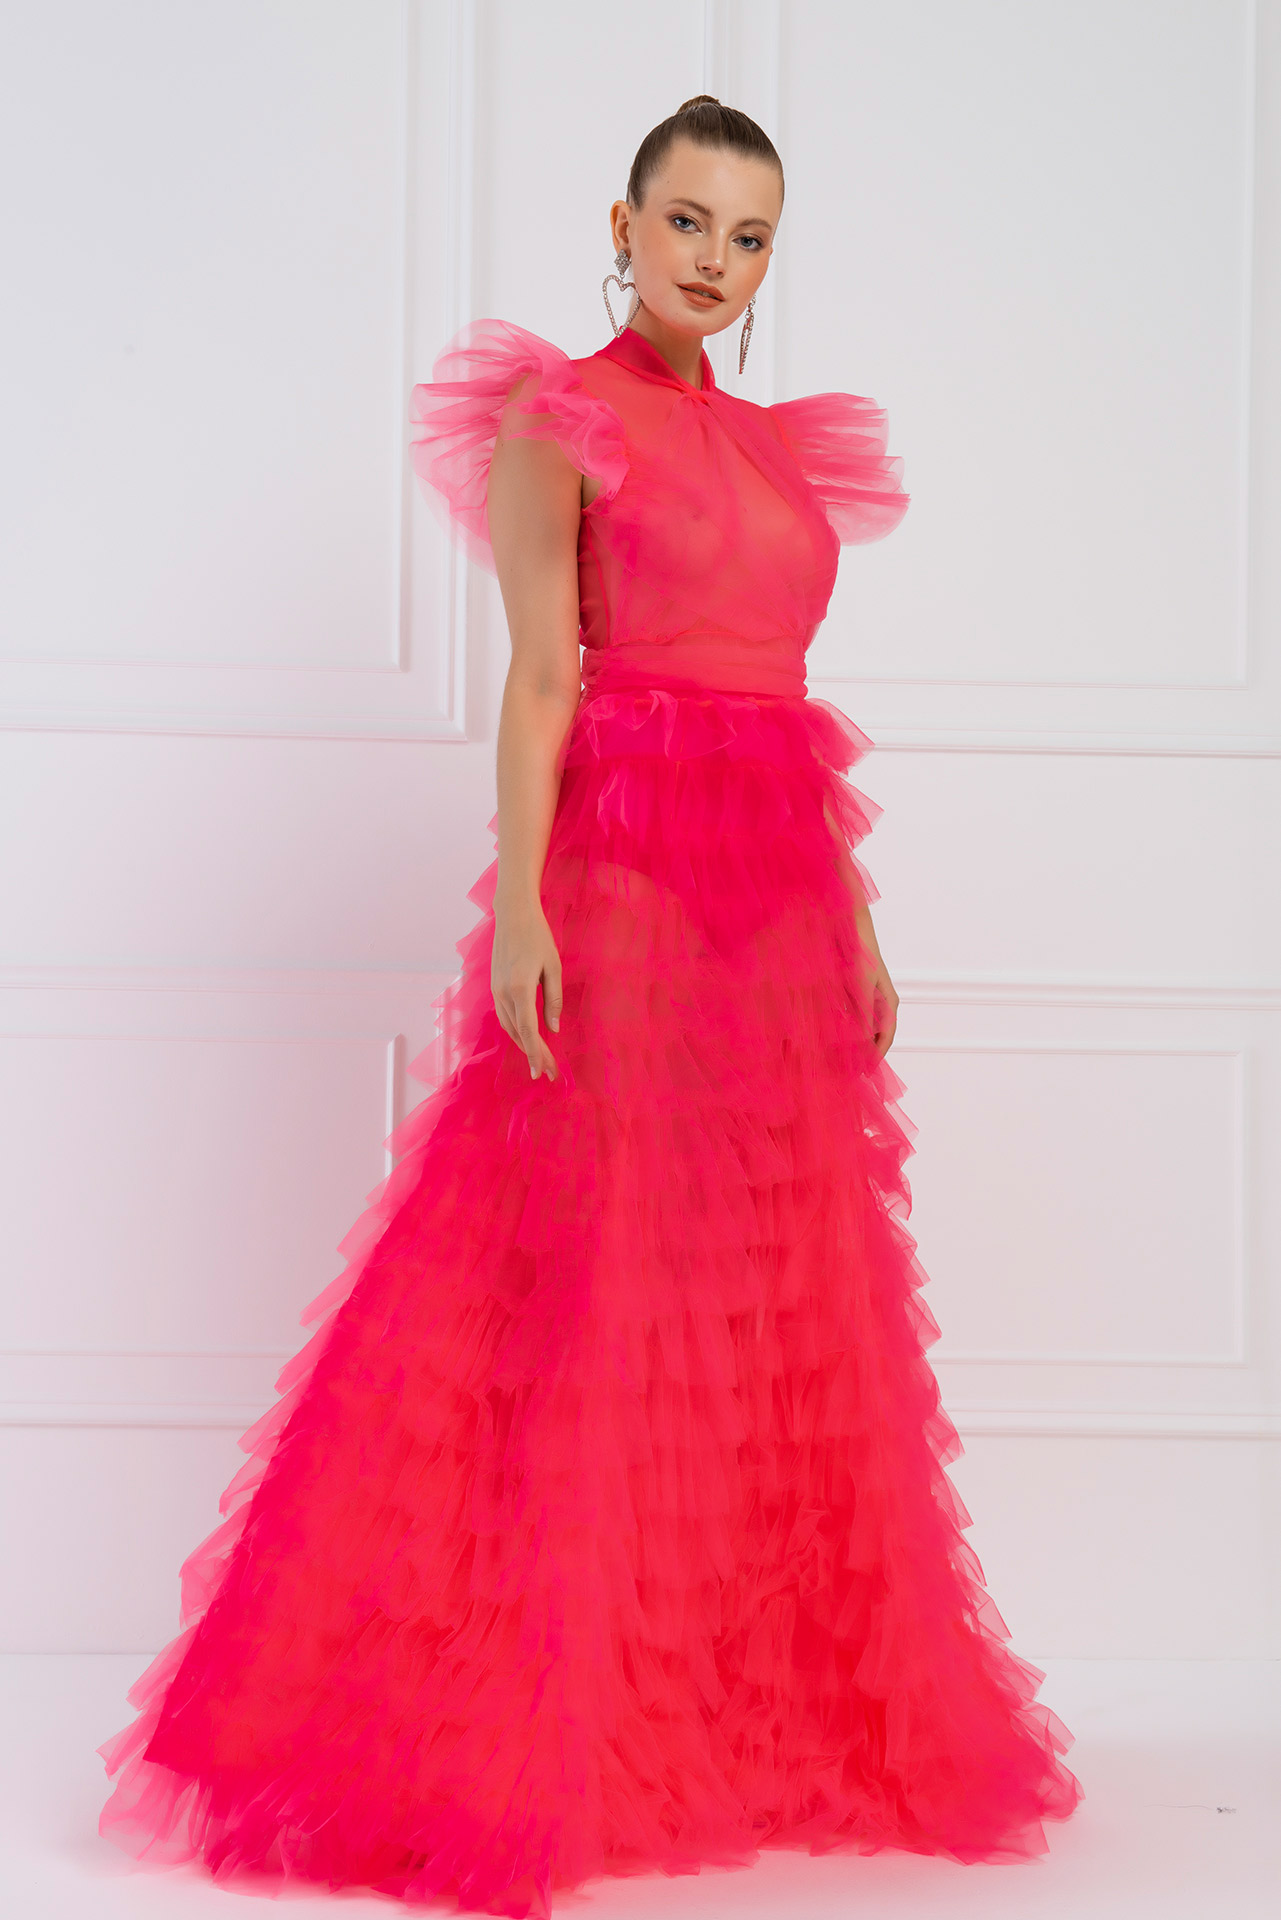 Tulle Detail Transparan Neon Pink Long Dress